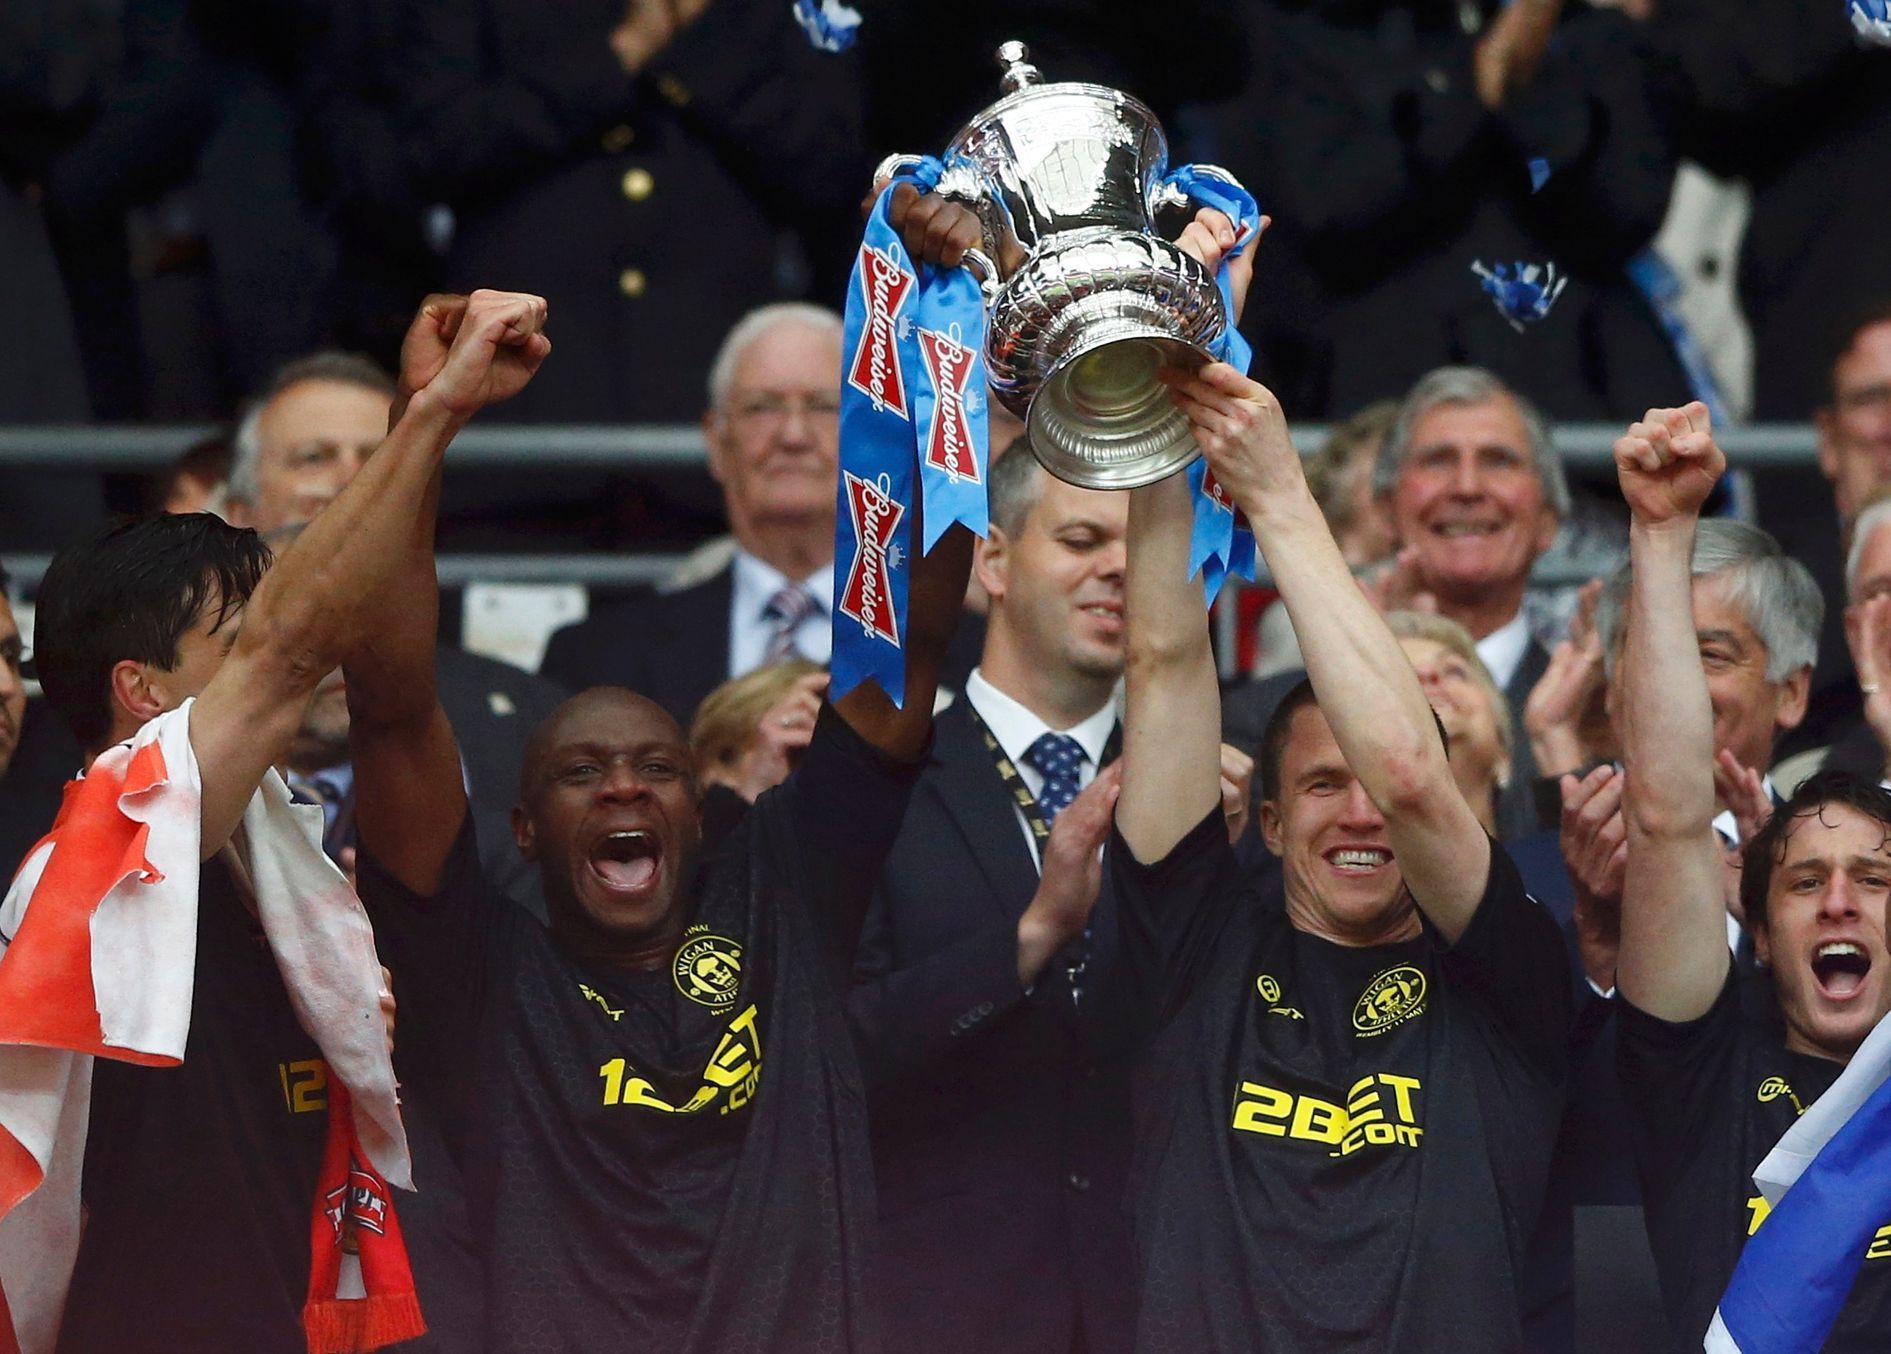 Wigan slaví zisk Anglického poháru